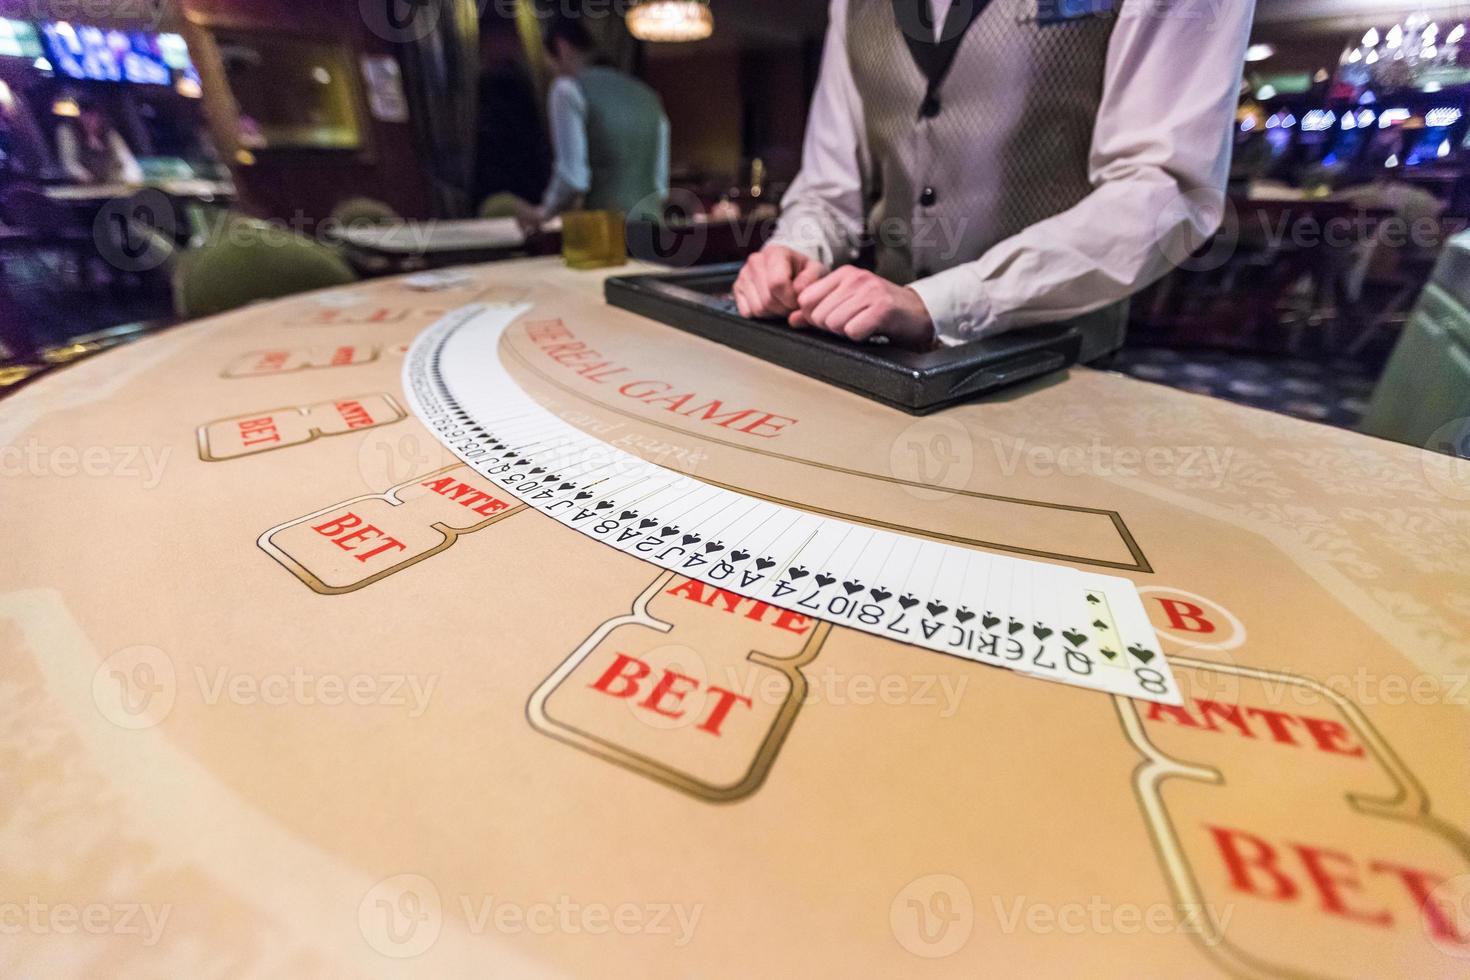 spelmarker och kort på ett spelbord roulette foto